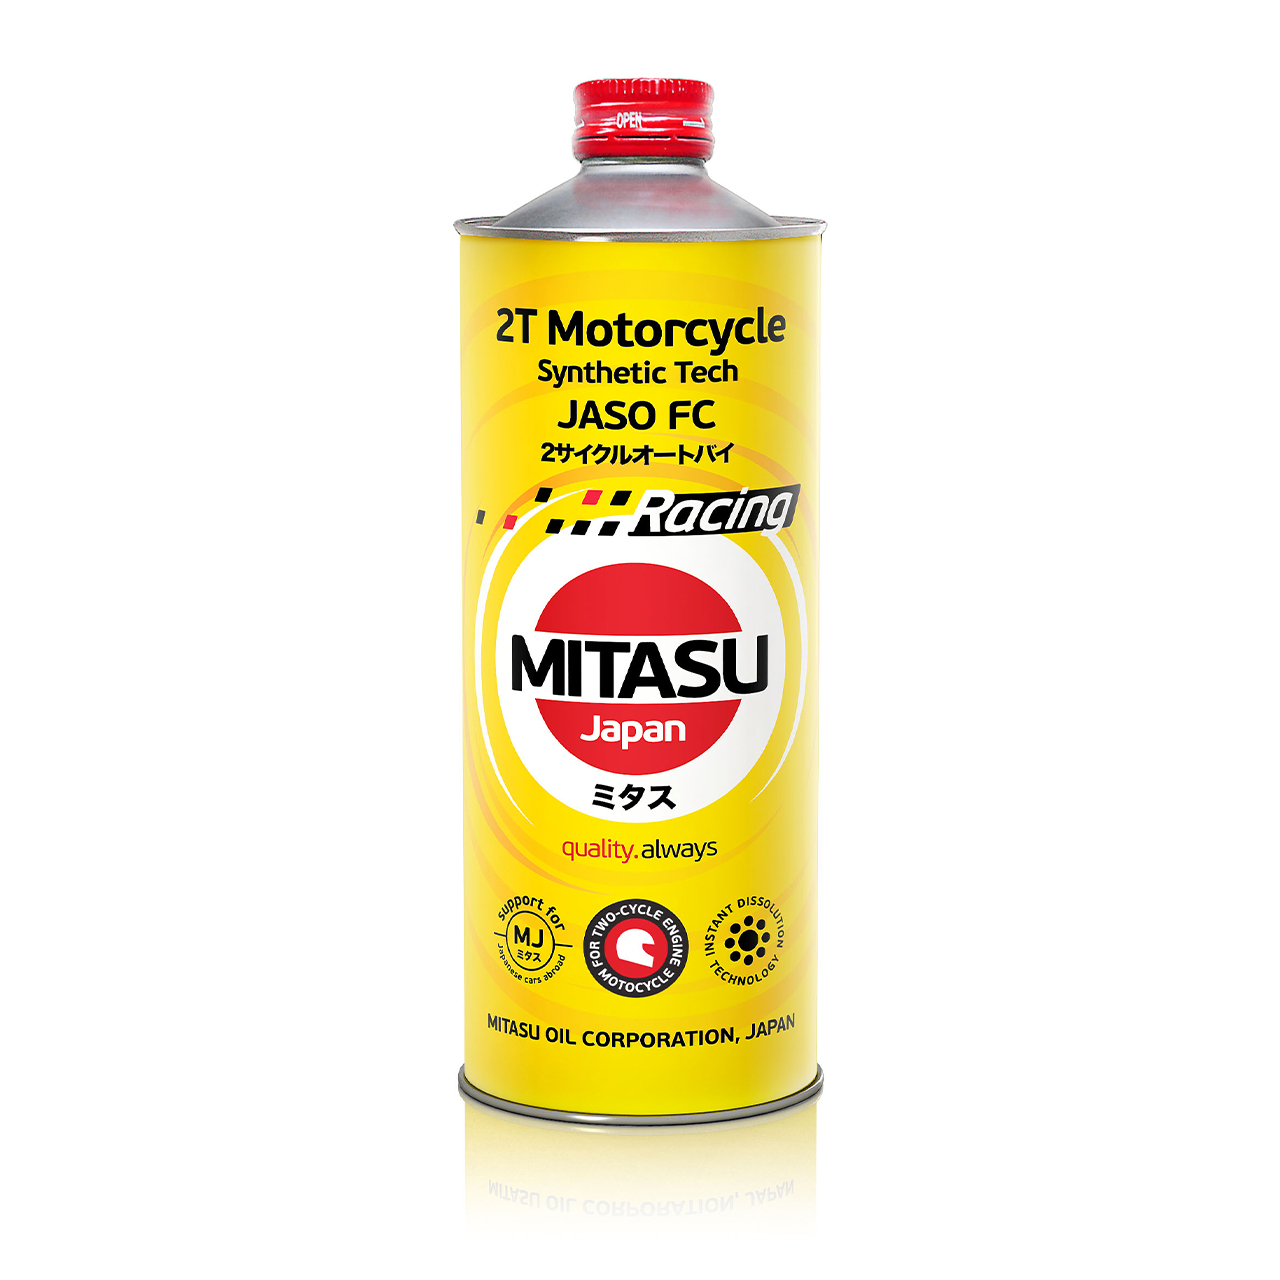 Купить запчасть MITASU - MJ9221 Масло моторное MITASU Racing 2T 20W50 Motorcycle Synthetik Oil 1л синтетика для мототехники MJ922